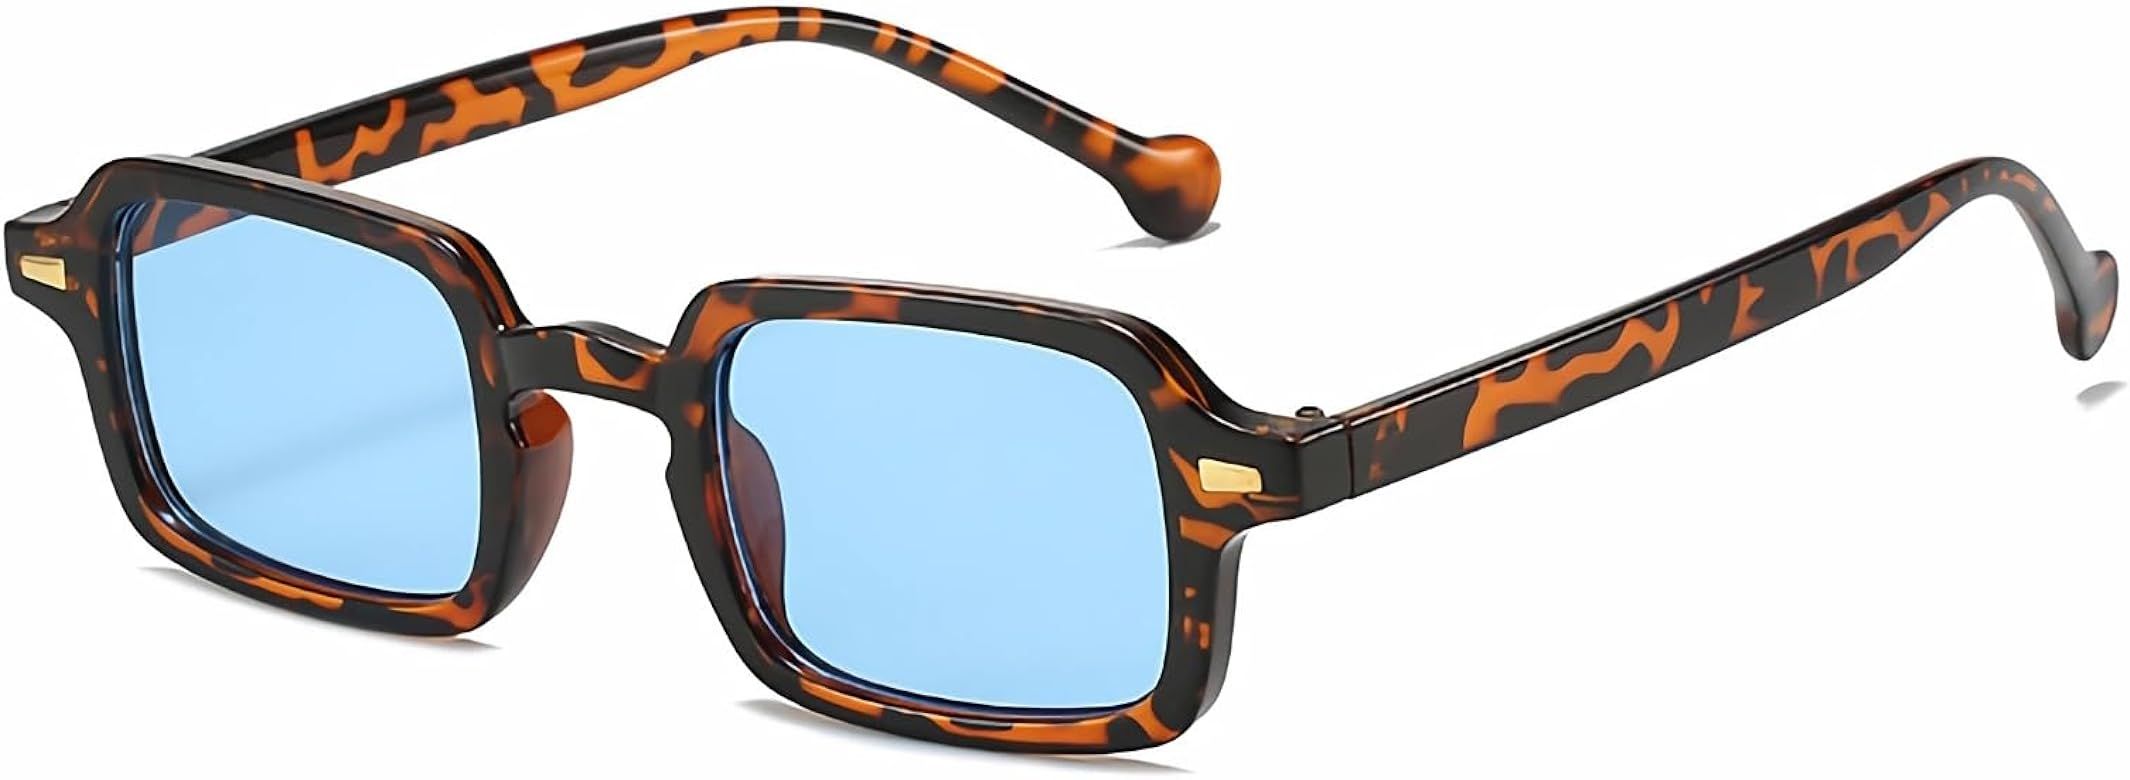 OSAGAMA Retro Square Sunglasses for Women Men Small Shades Trendy Rectangle Sunglasses | Amazon (US)